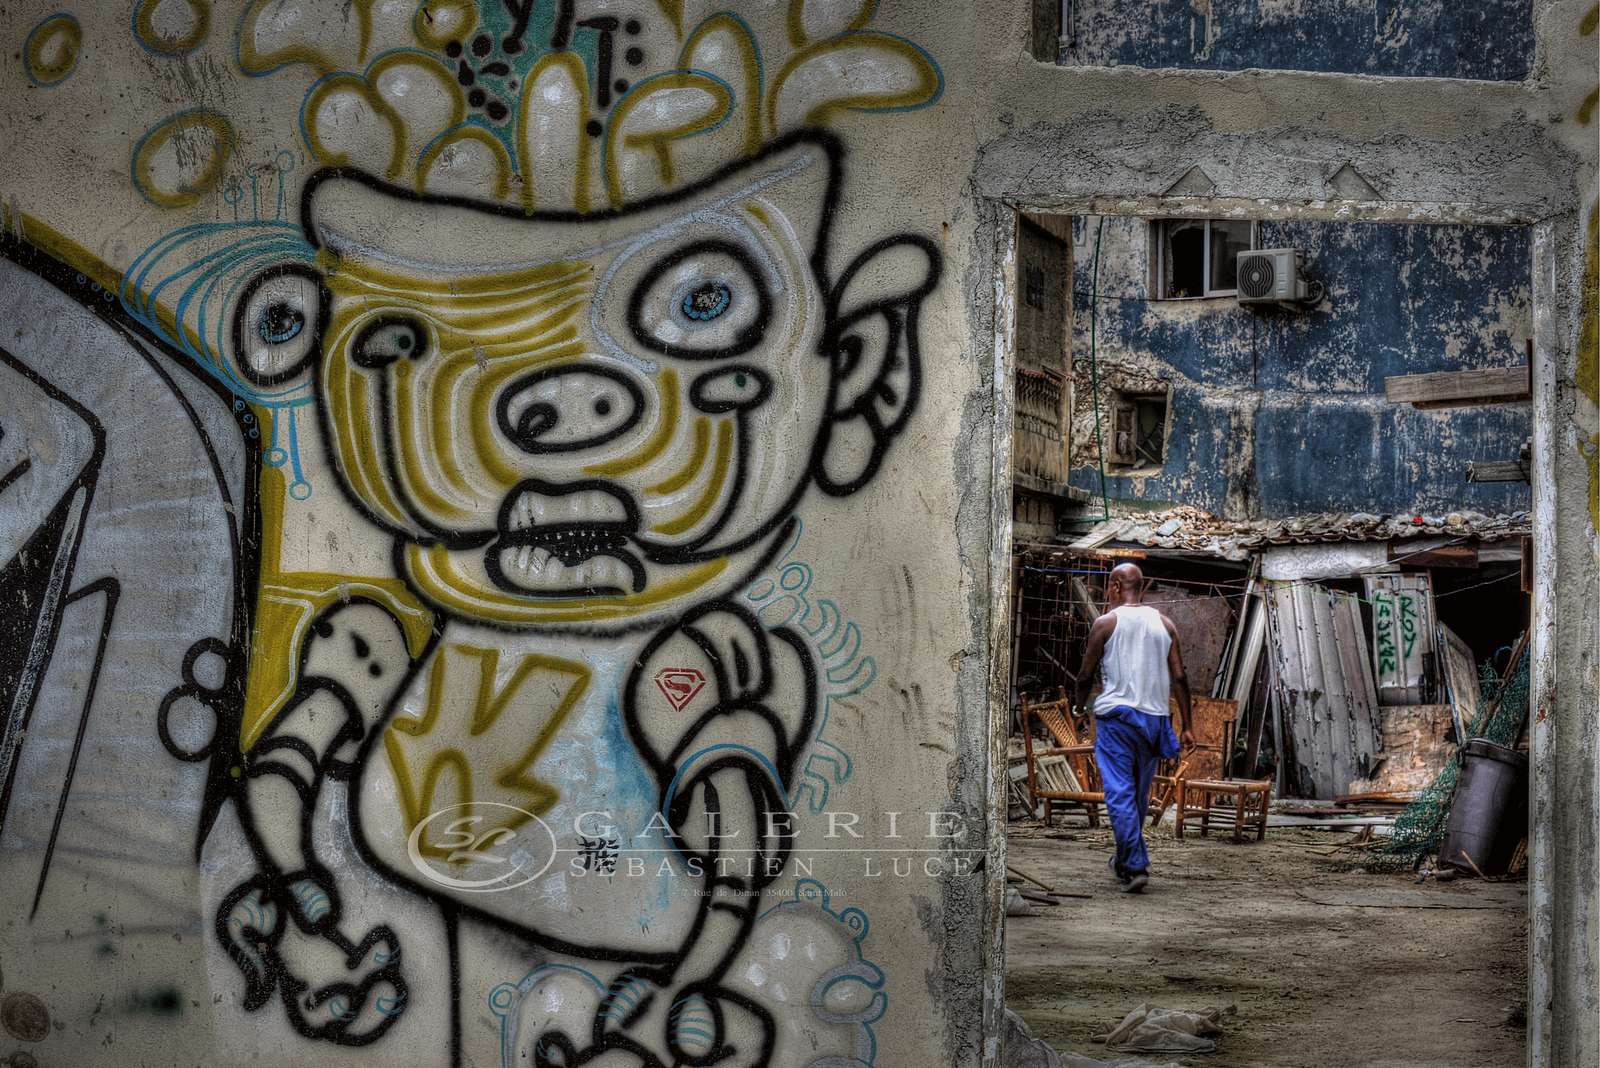 Cuba Street Art - Photographie Photographies par thématiques Galerie Sébastien Luce